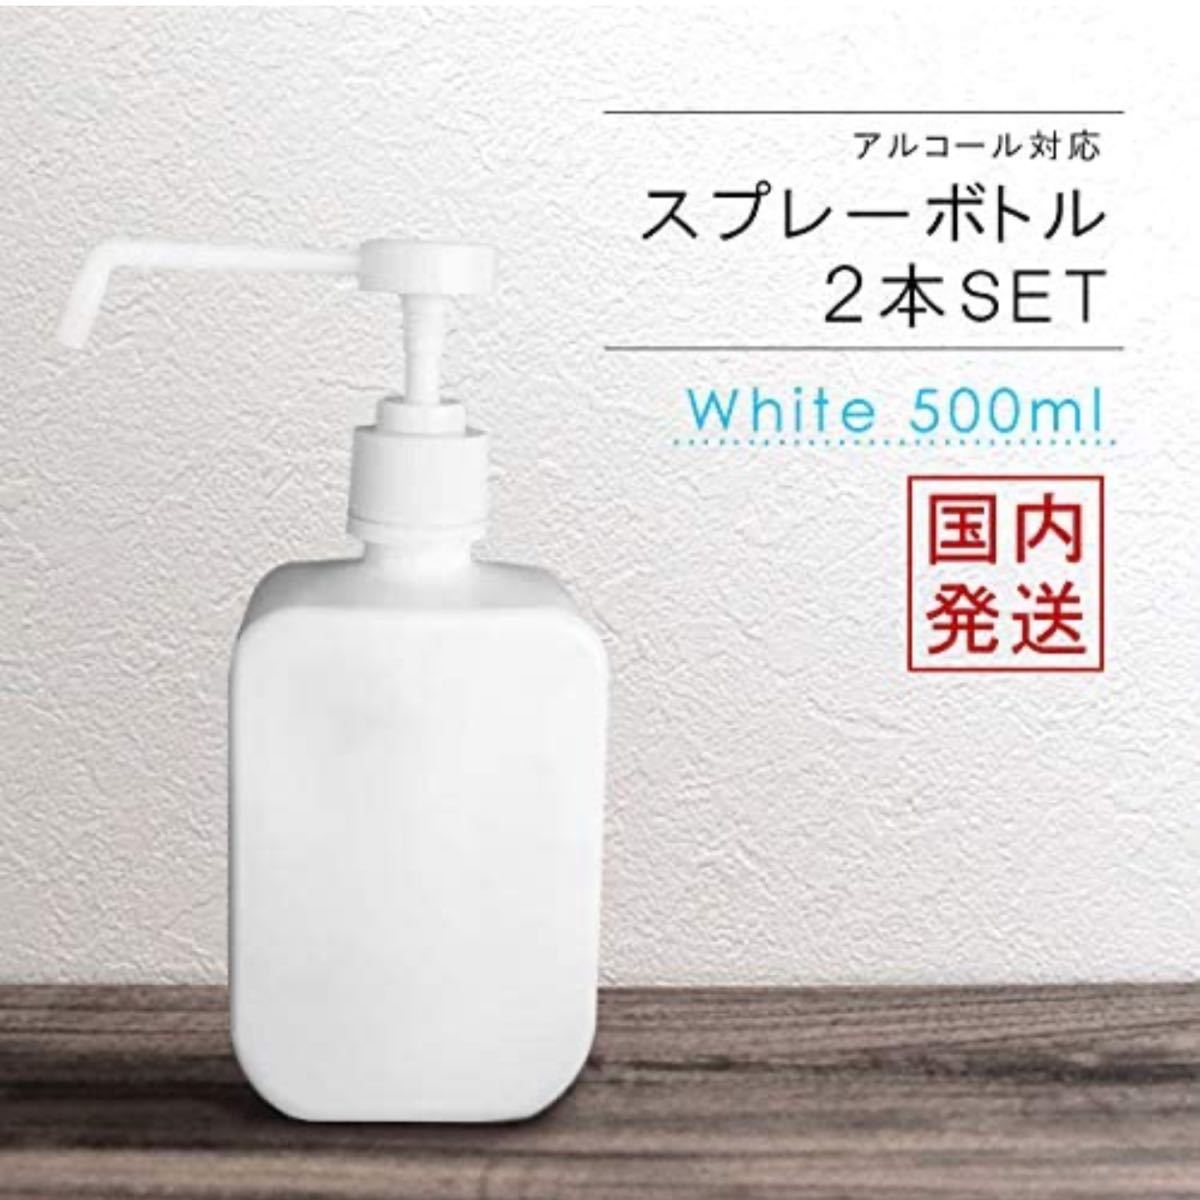 スプレーボトル 500ml 2本セット ホワイト アルコール対応 ポンプ スプレー 遮光 